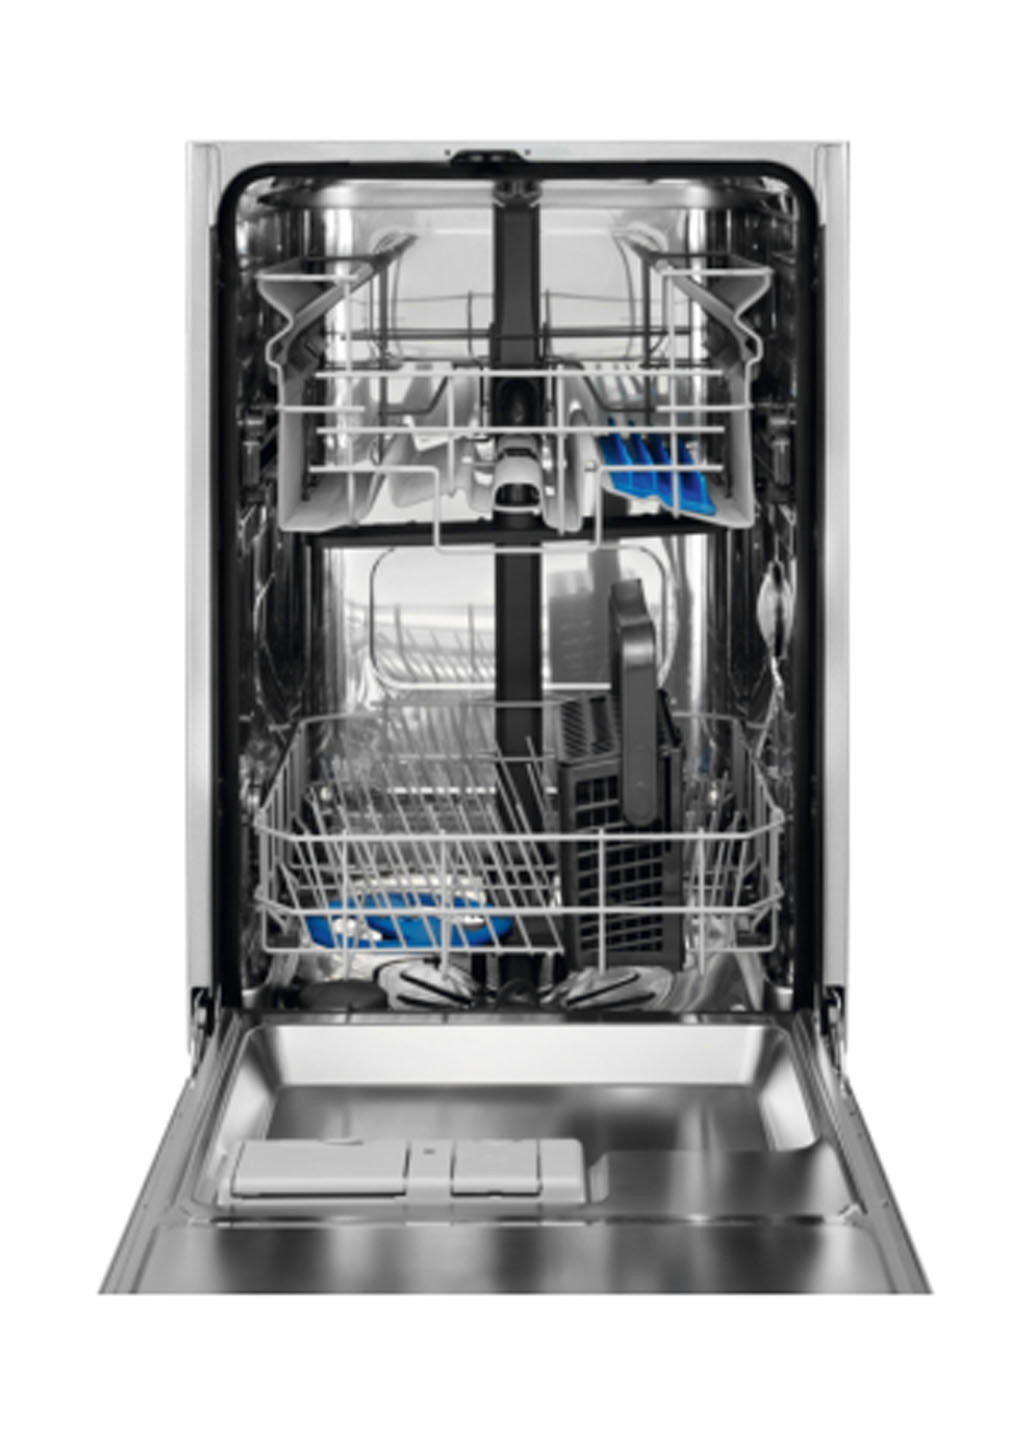 Посудомоечная машина полновстраиваемая Electrolux ESL94585RO